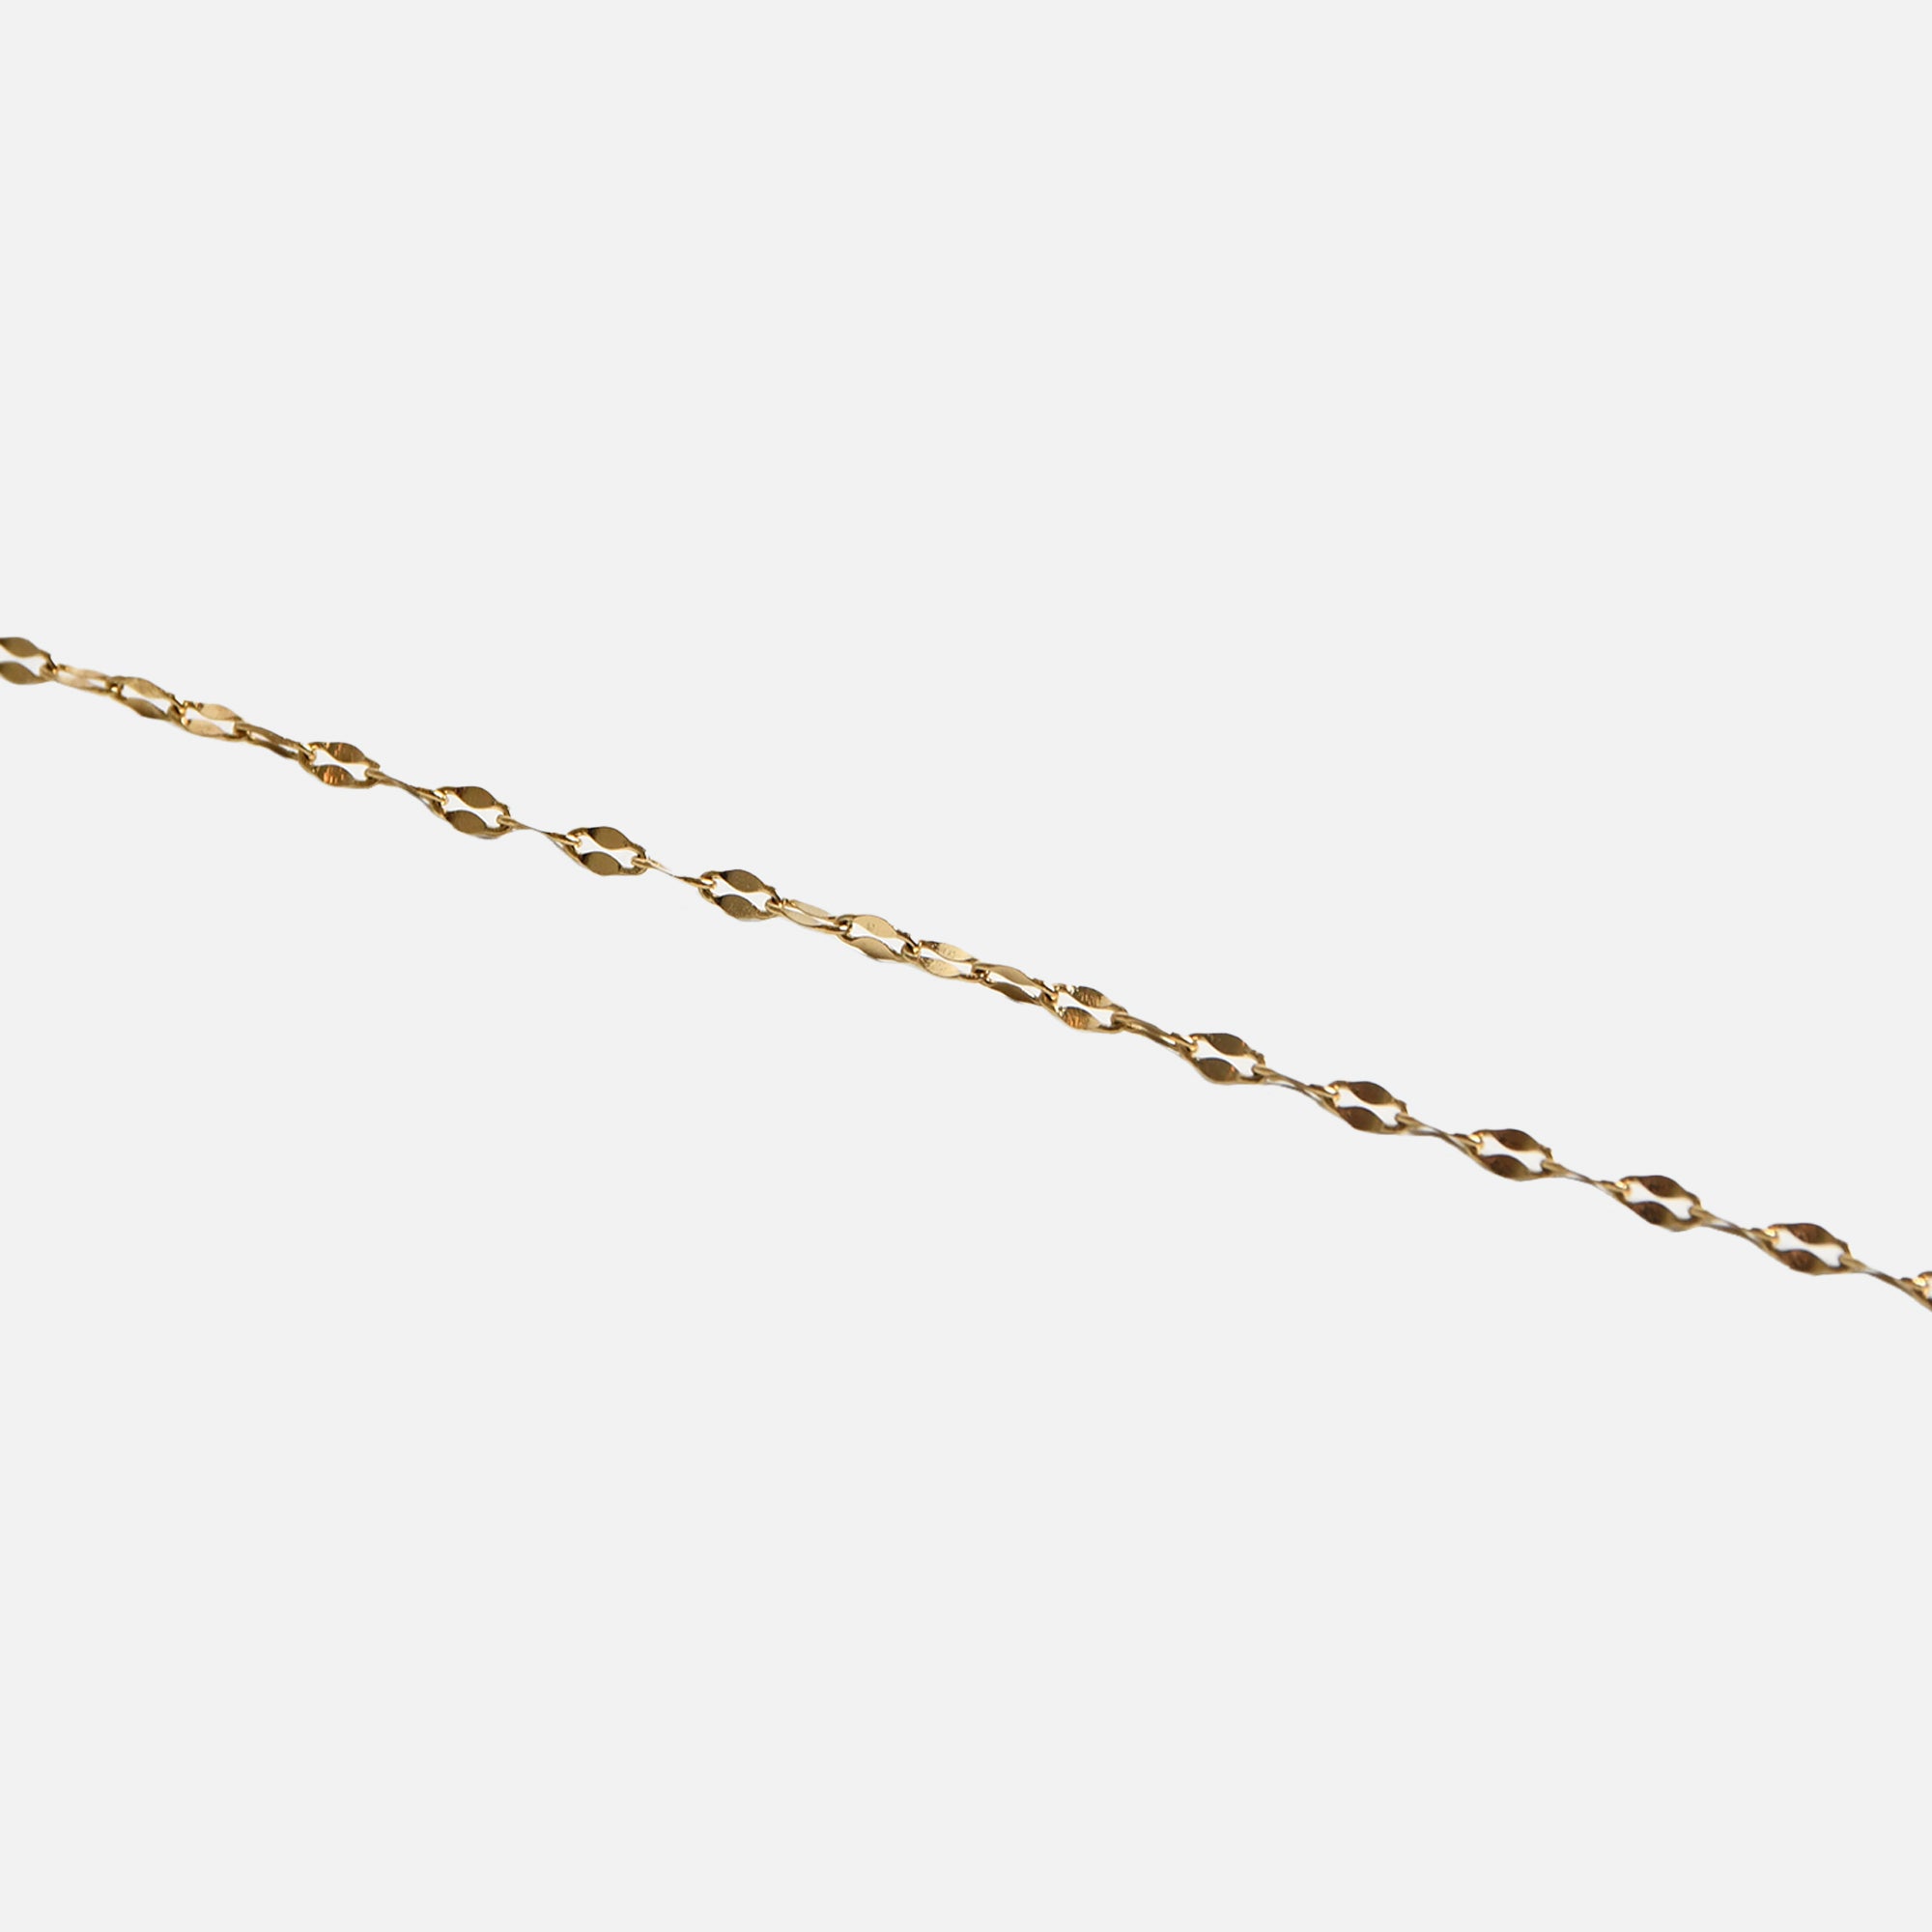 Golden diamond mesh bracelet in stainless steel